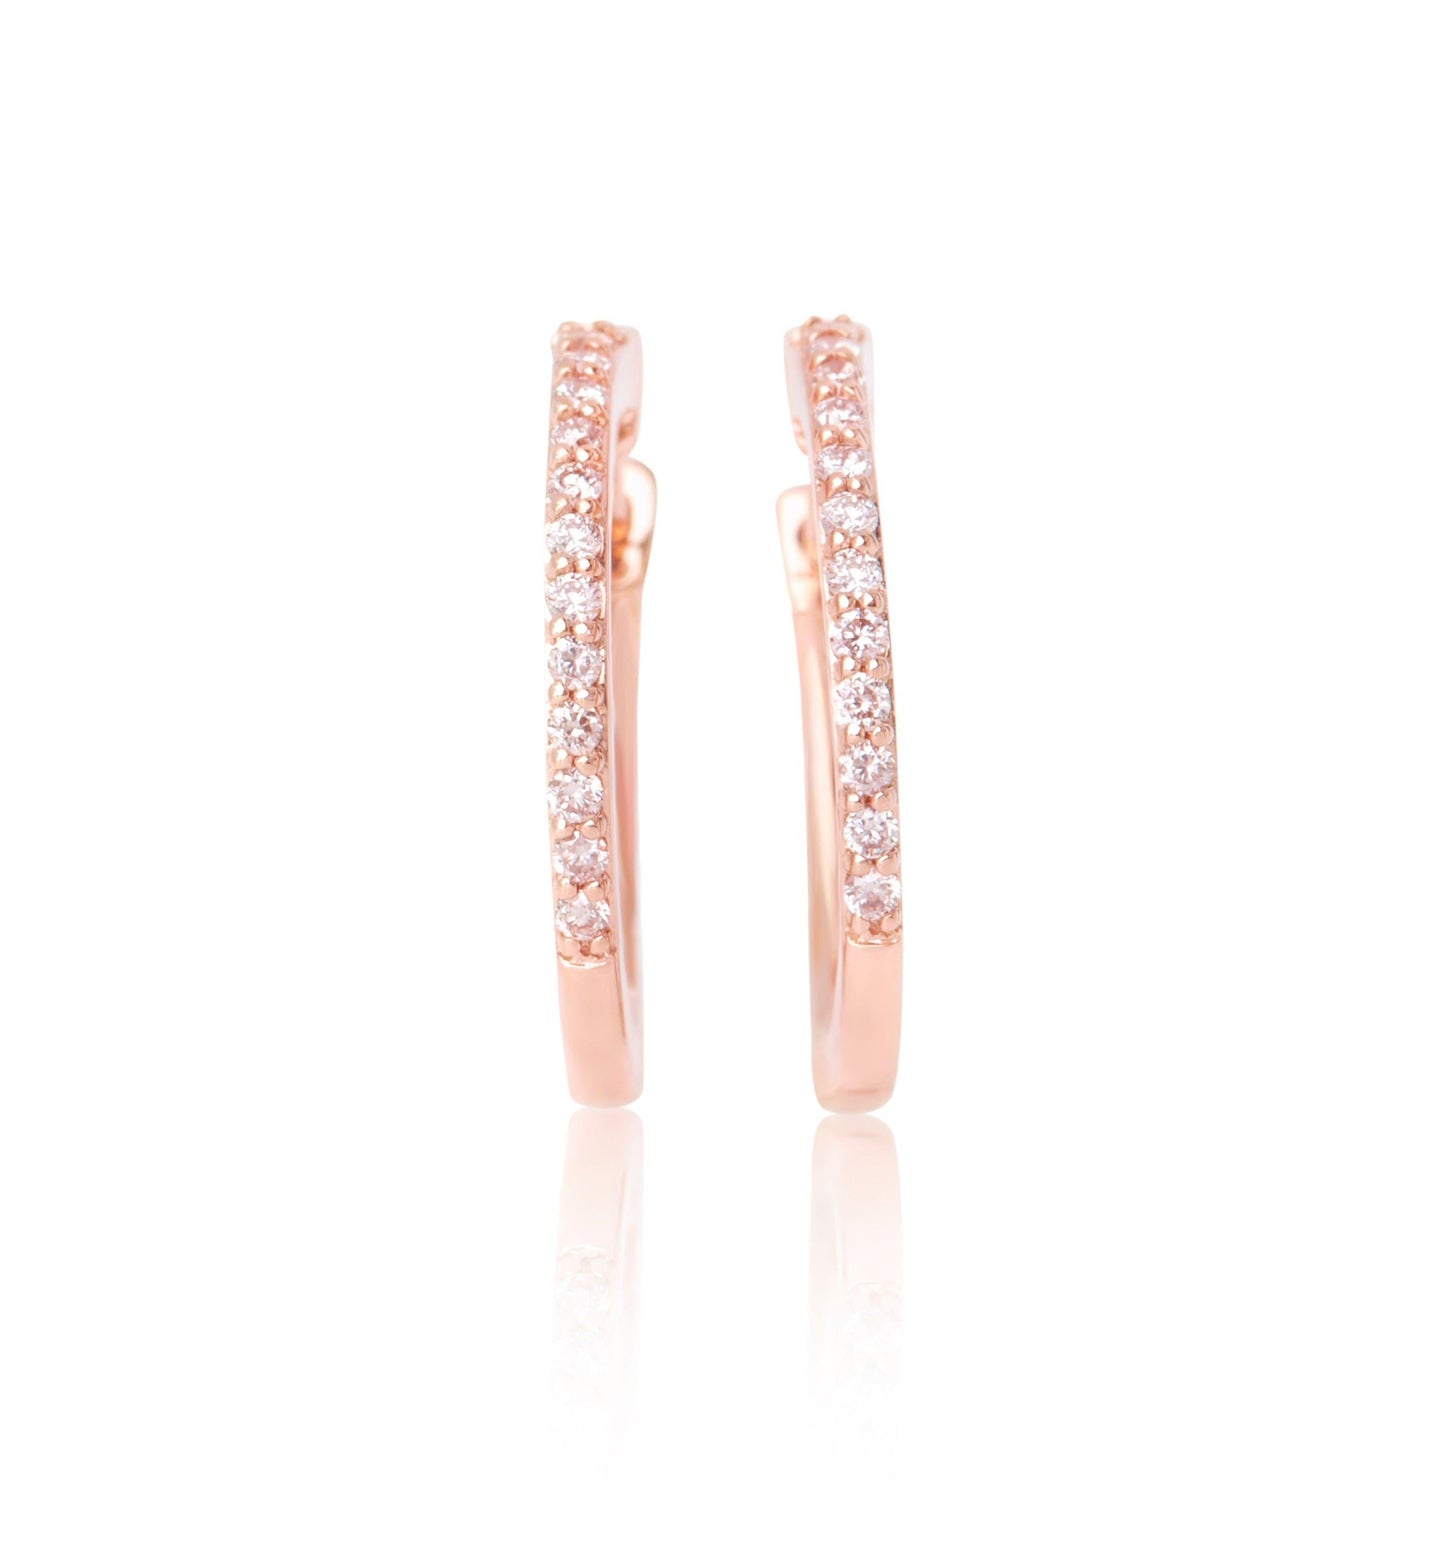 Eminence Pinks Diamond Claw Set Hoops - Rosendorff Diamond Jewellers